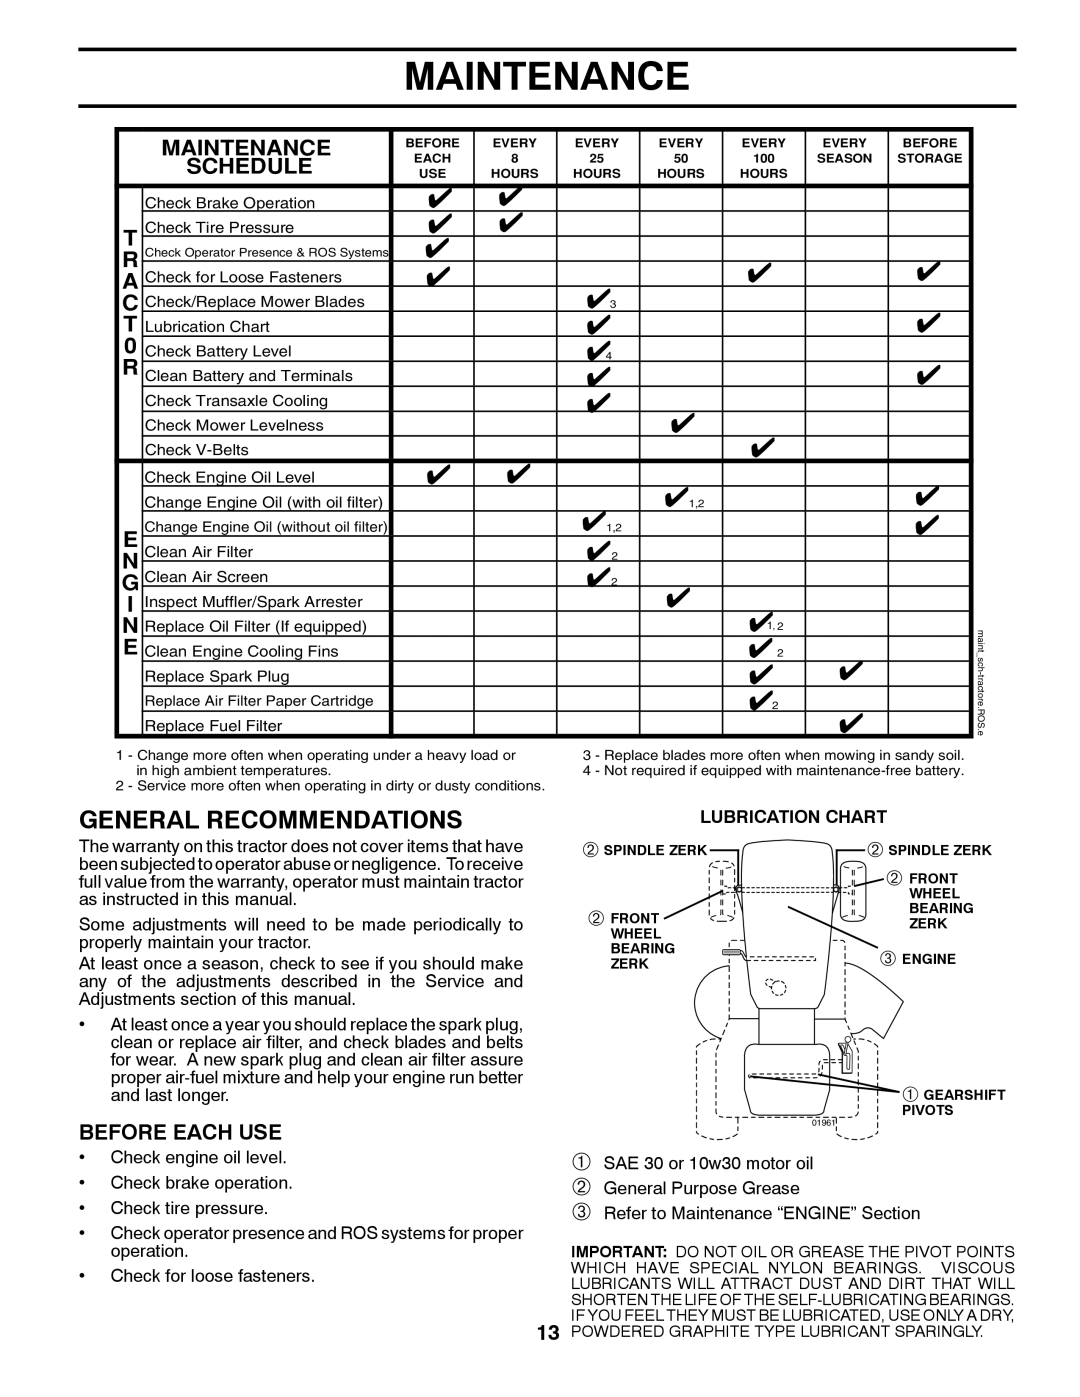 Poulan 424368 manual Maintenance, Lubrication Chart 